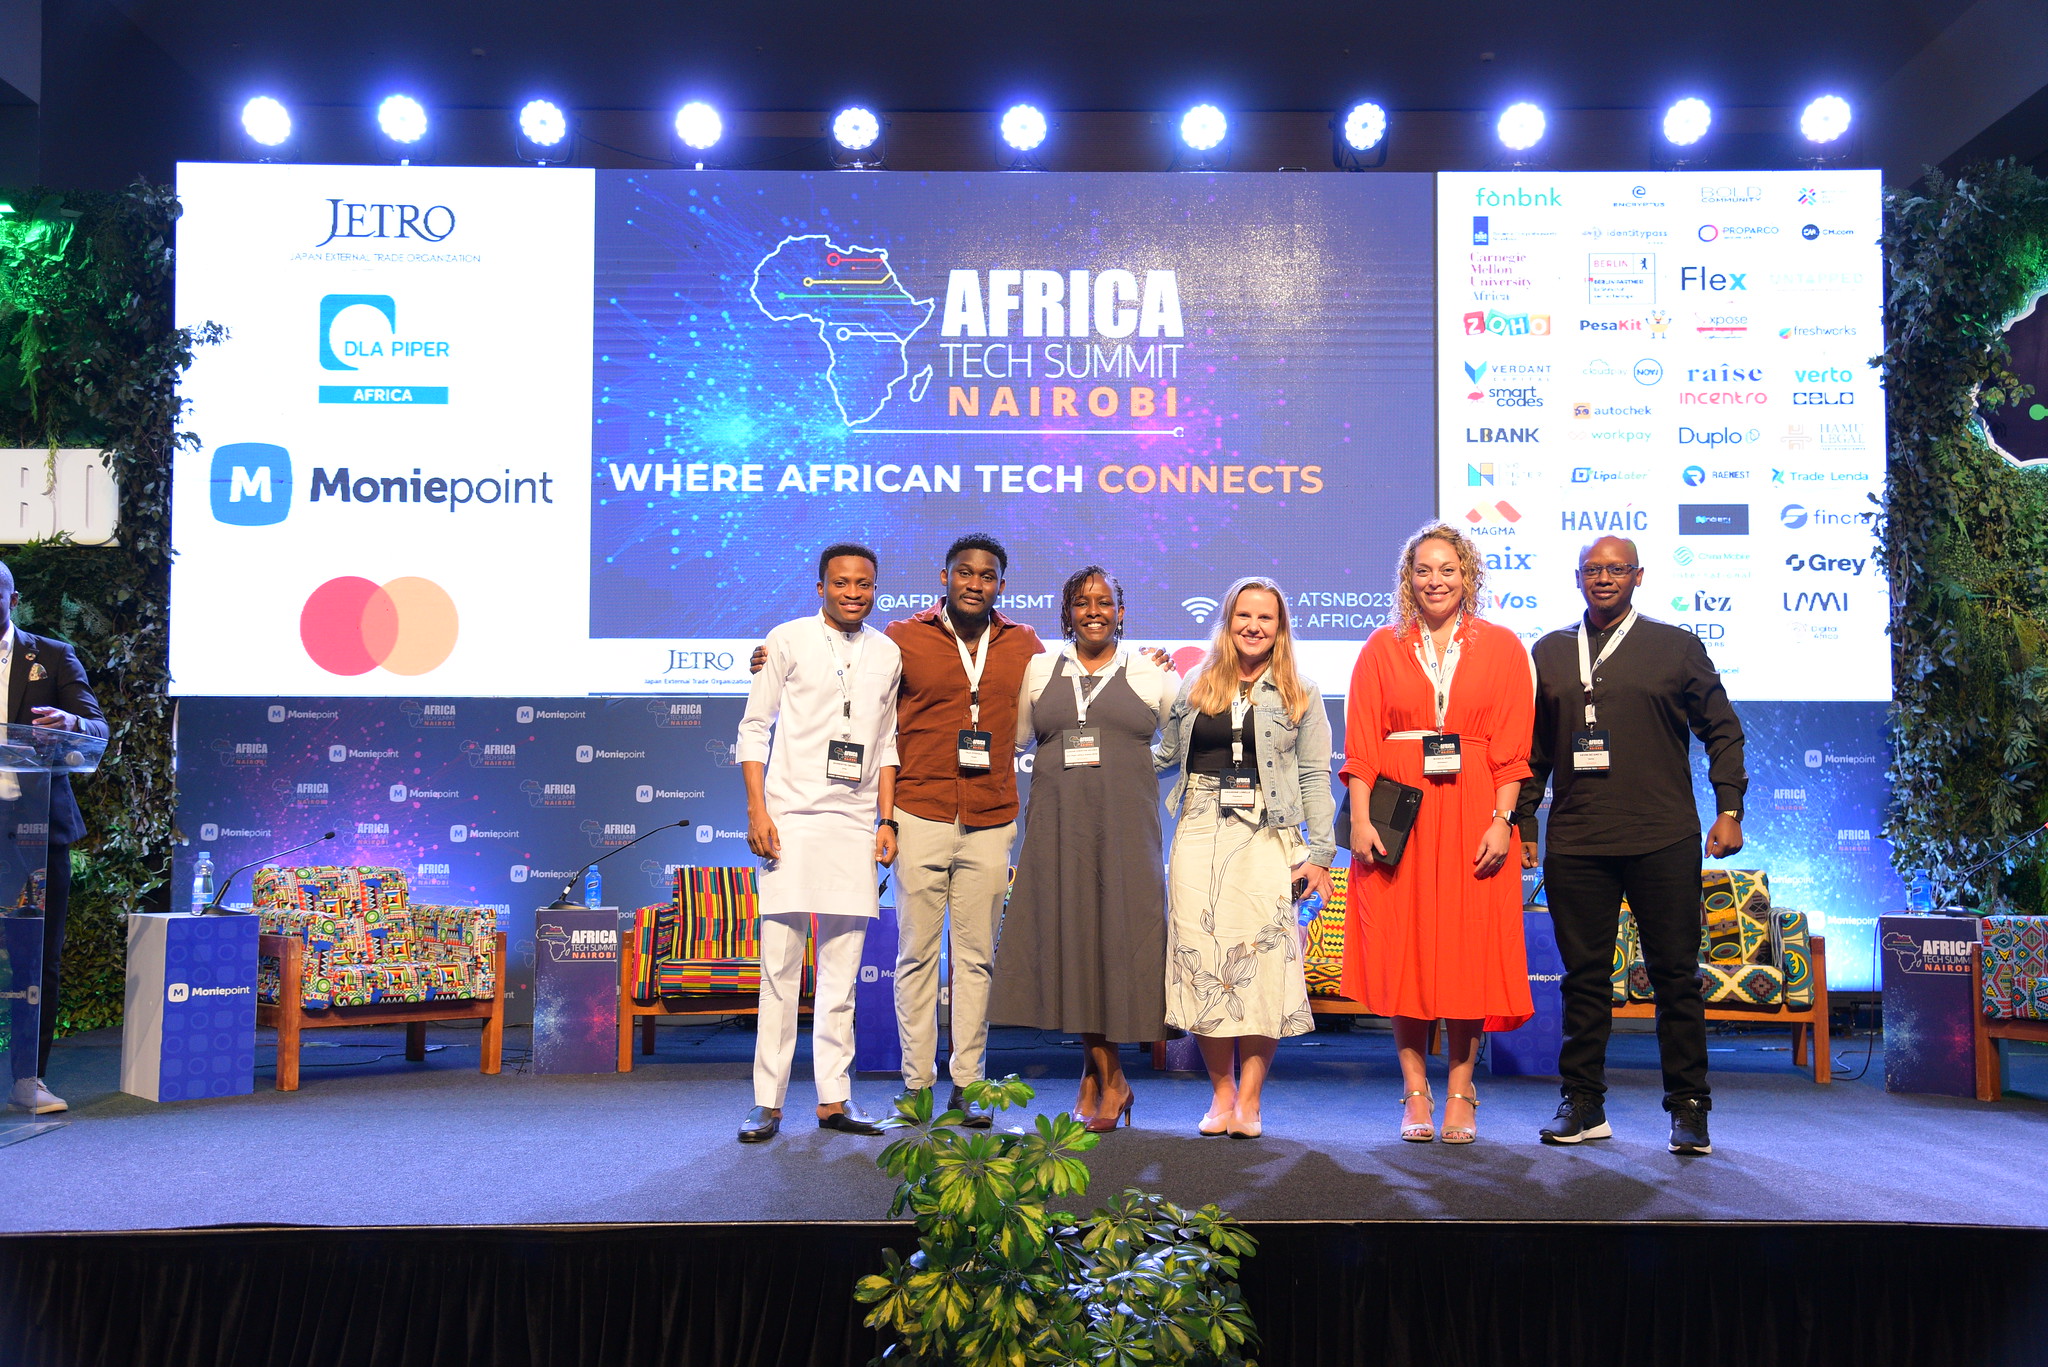 Africa Tech Summit (@AfricaTechSMT) / Twitter